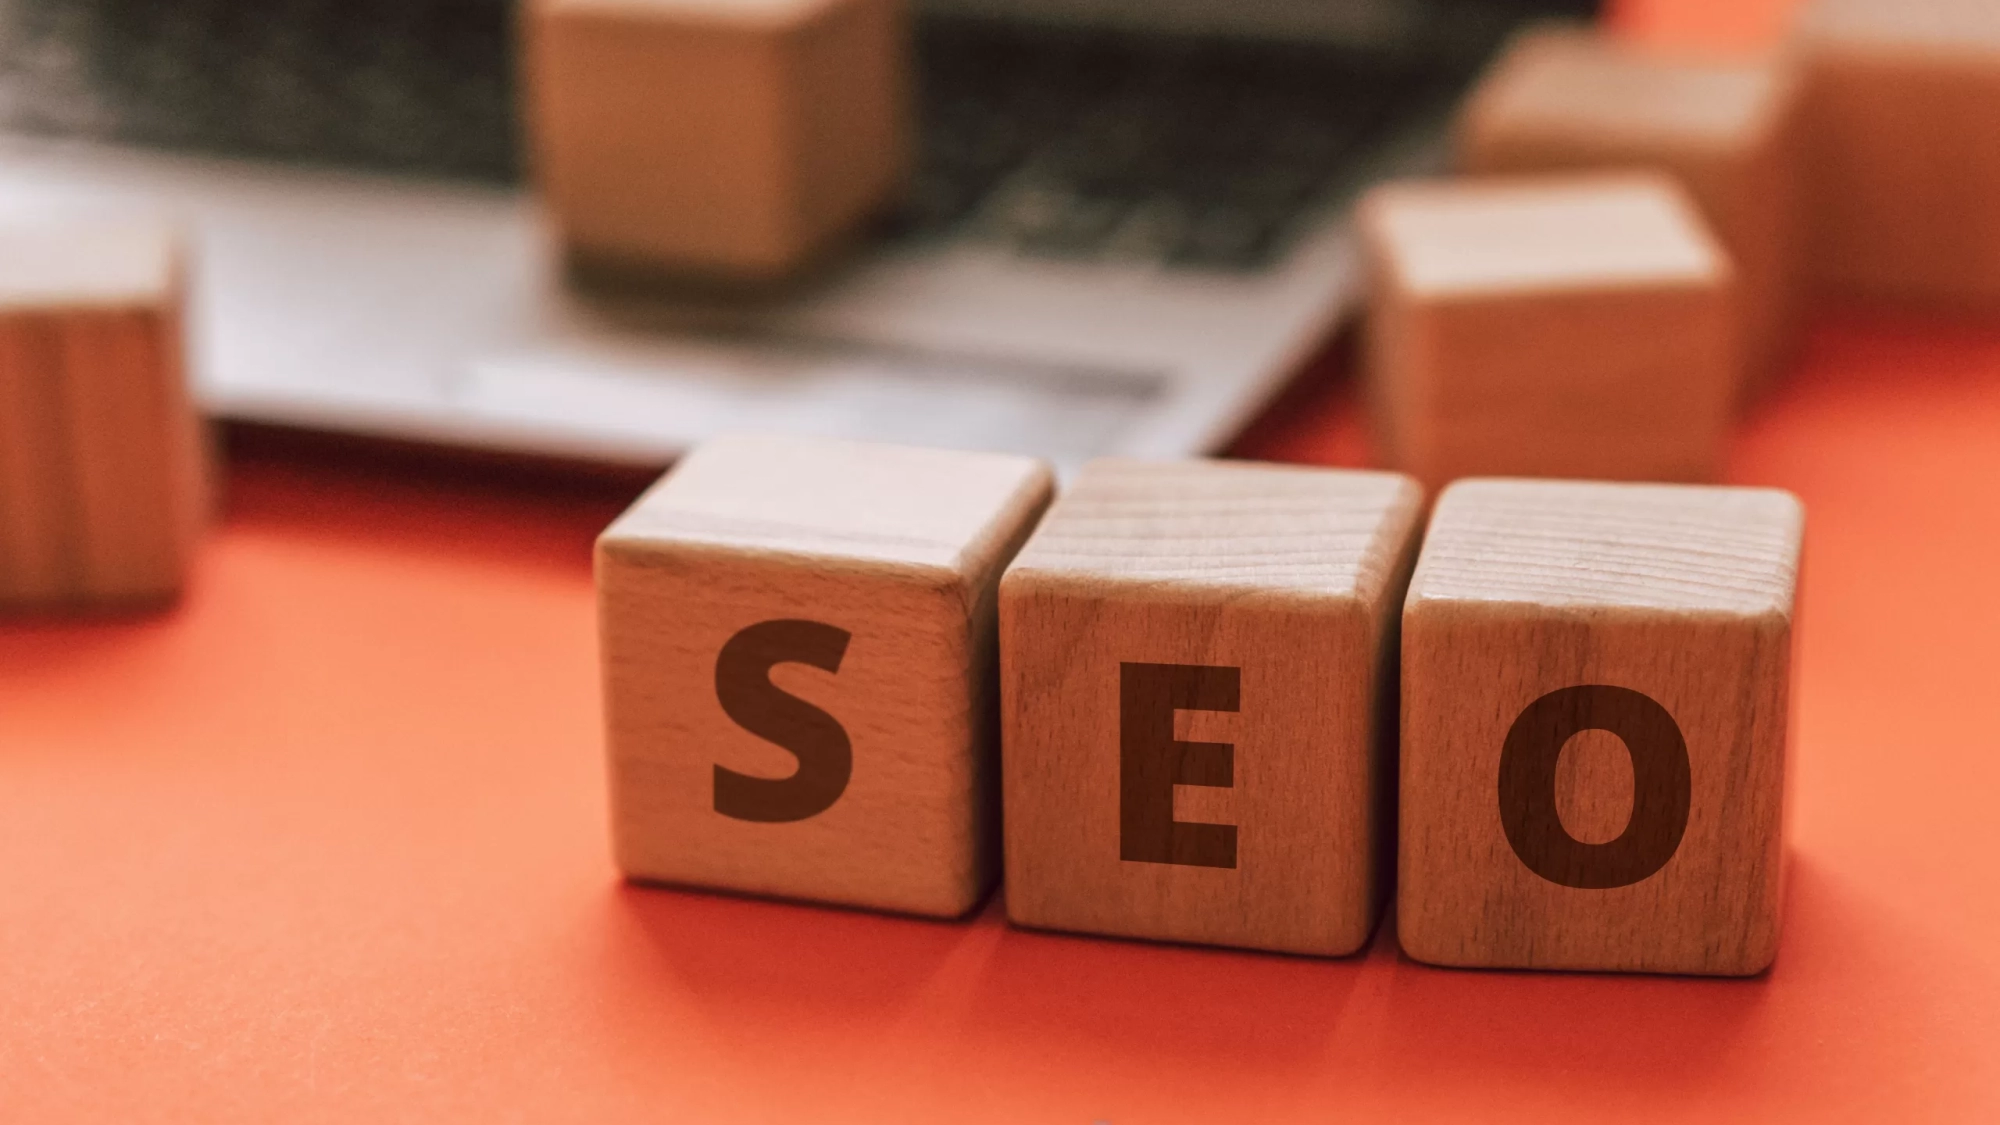 Tips Meningkatkan Posisi Website pada Search Engine